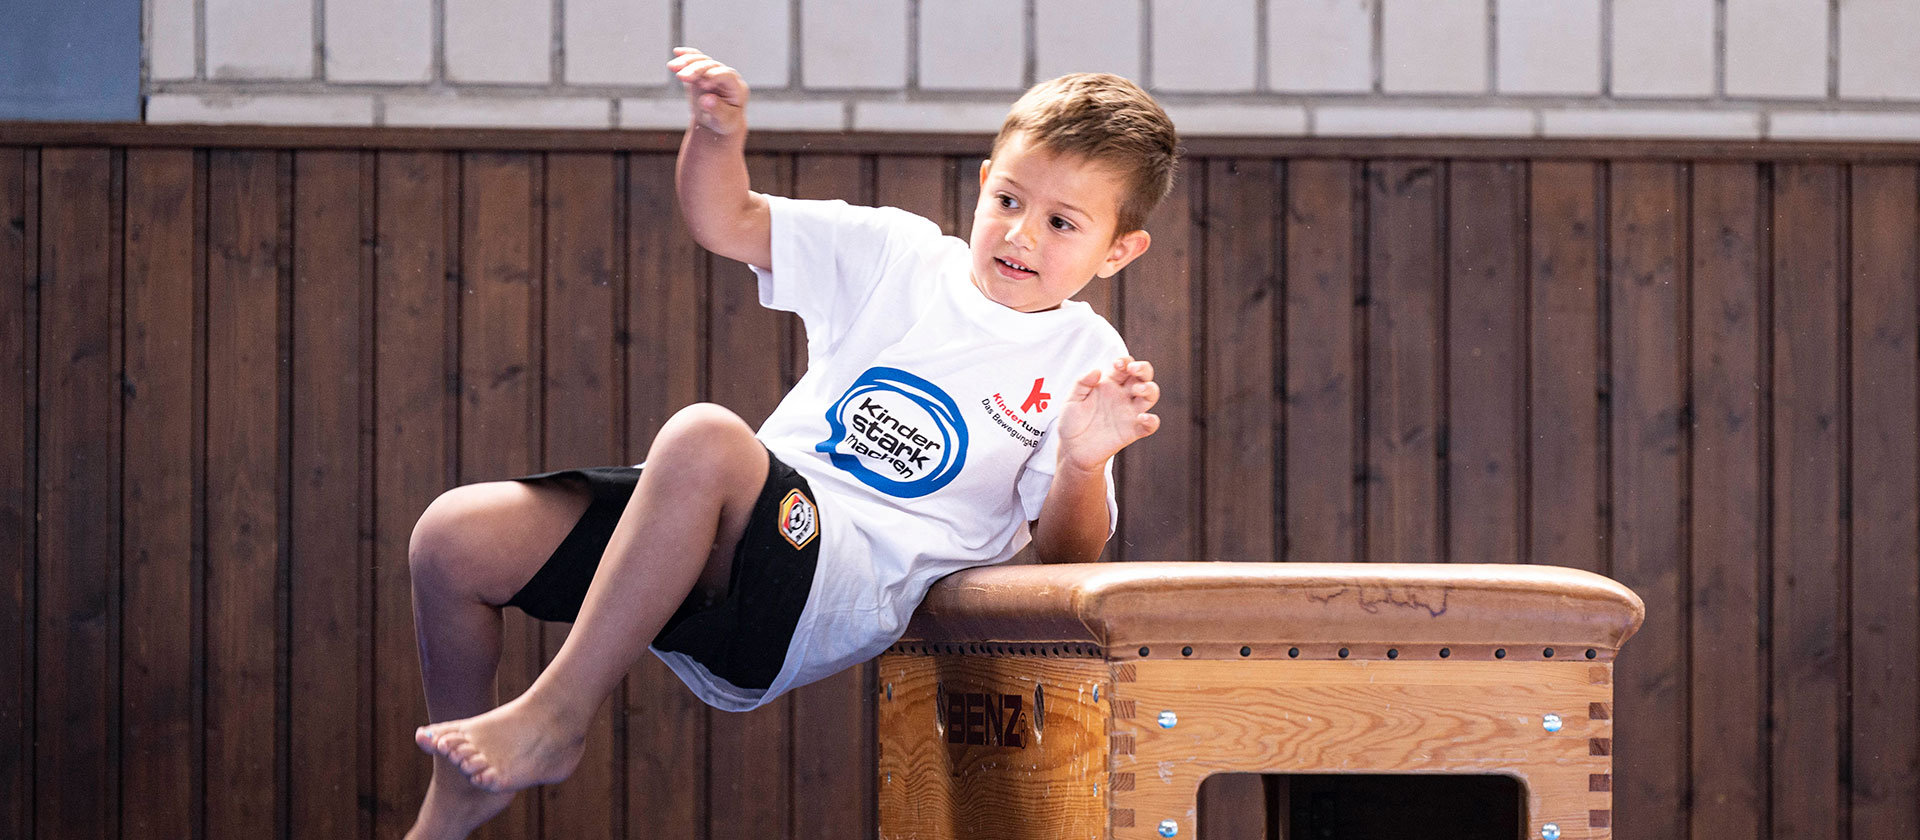 Junge springt über den Kasten | Bildquelle: Picture Alliance/Rössler